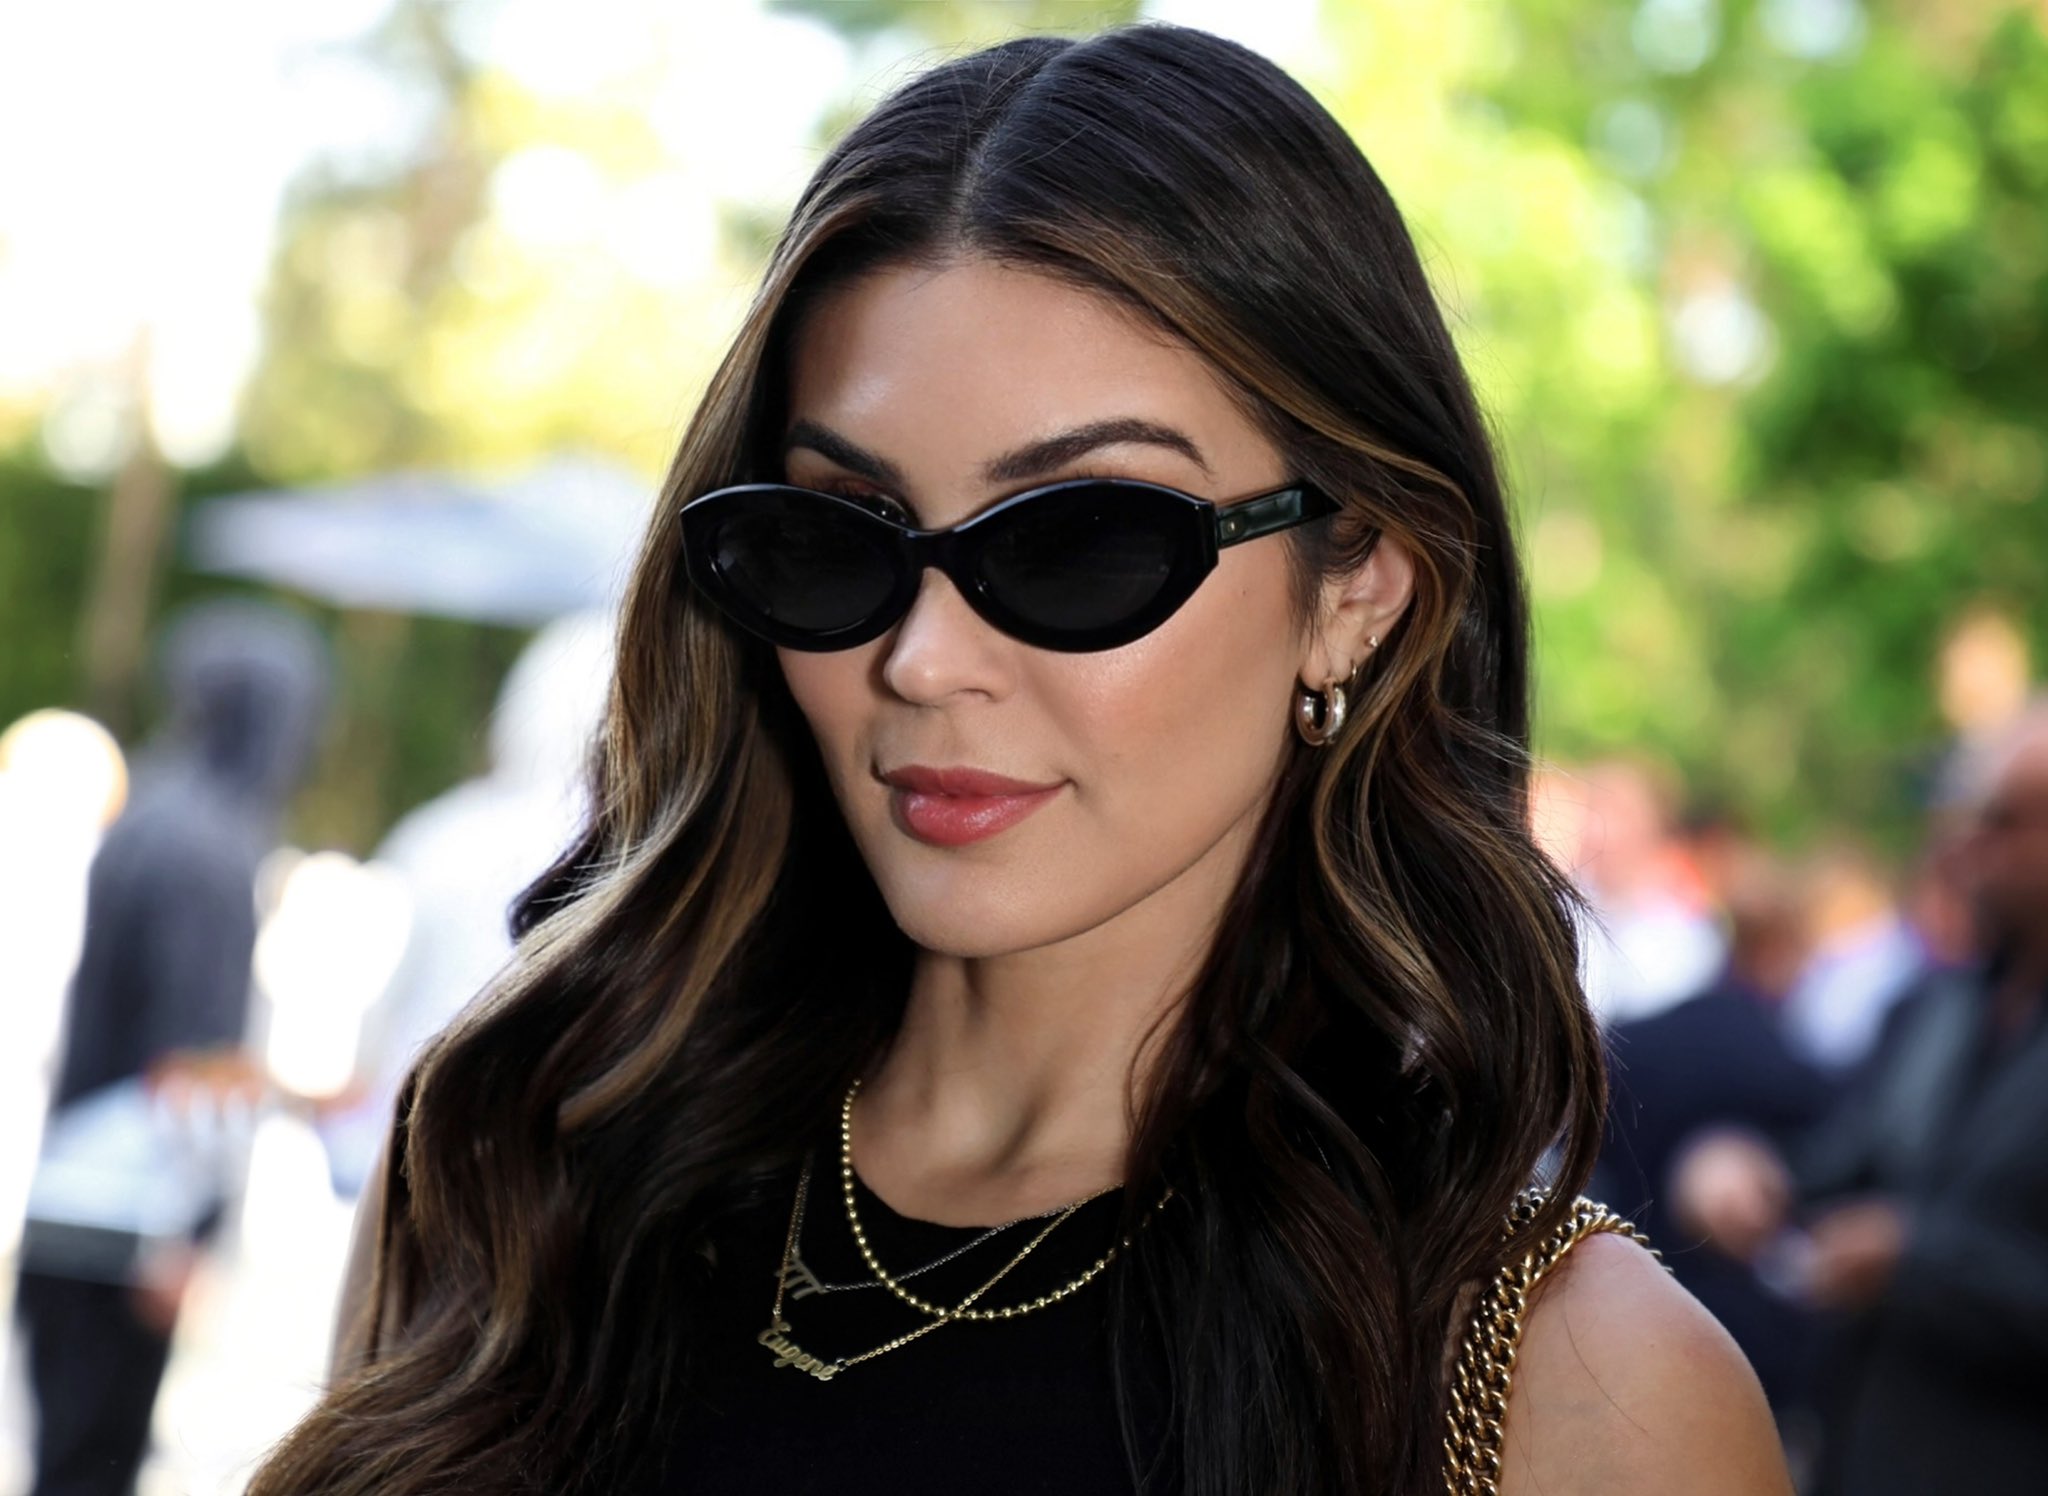 Blake'' black sunglasses for Women